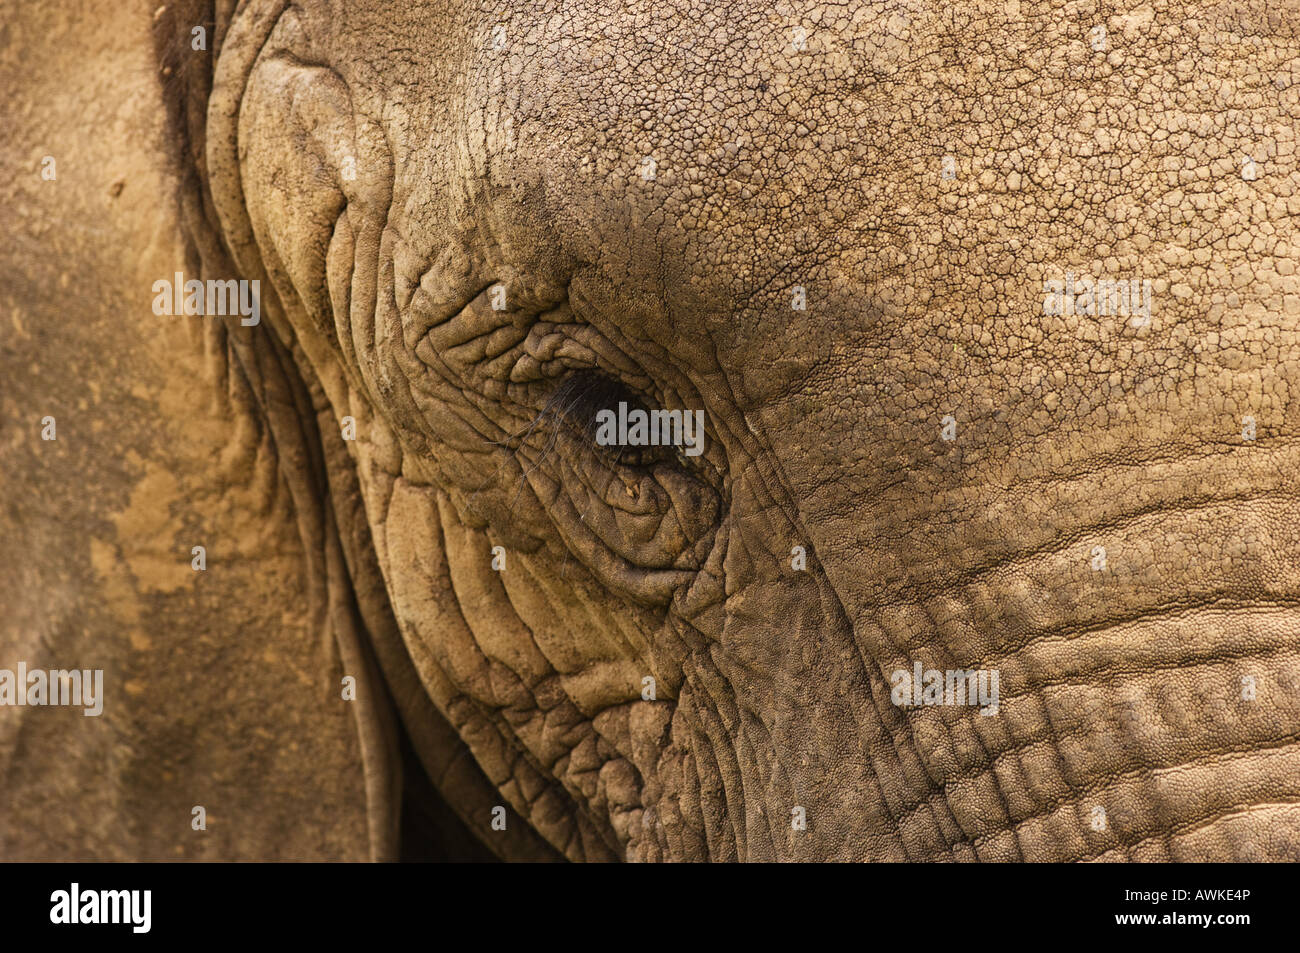 Afrikanischer Elefant. Stockfoto